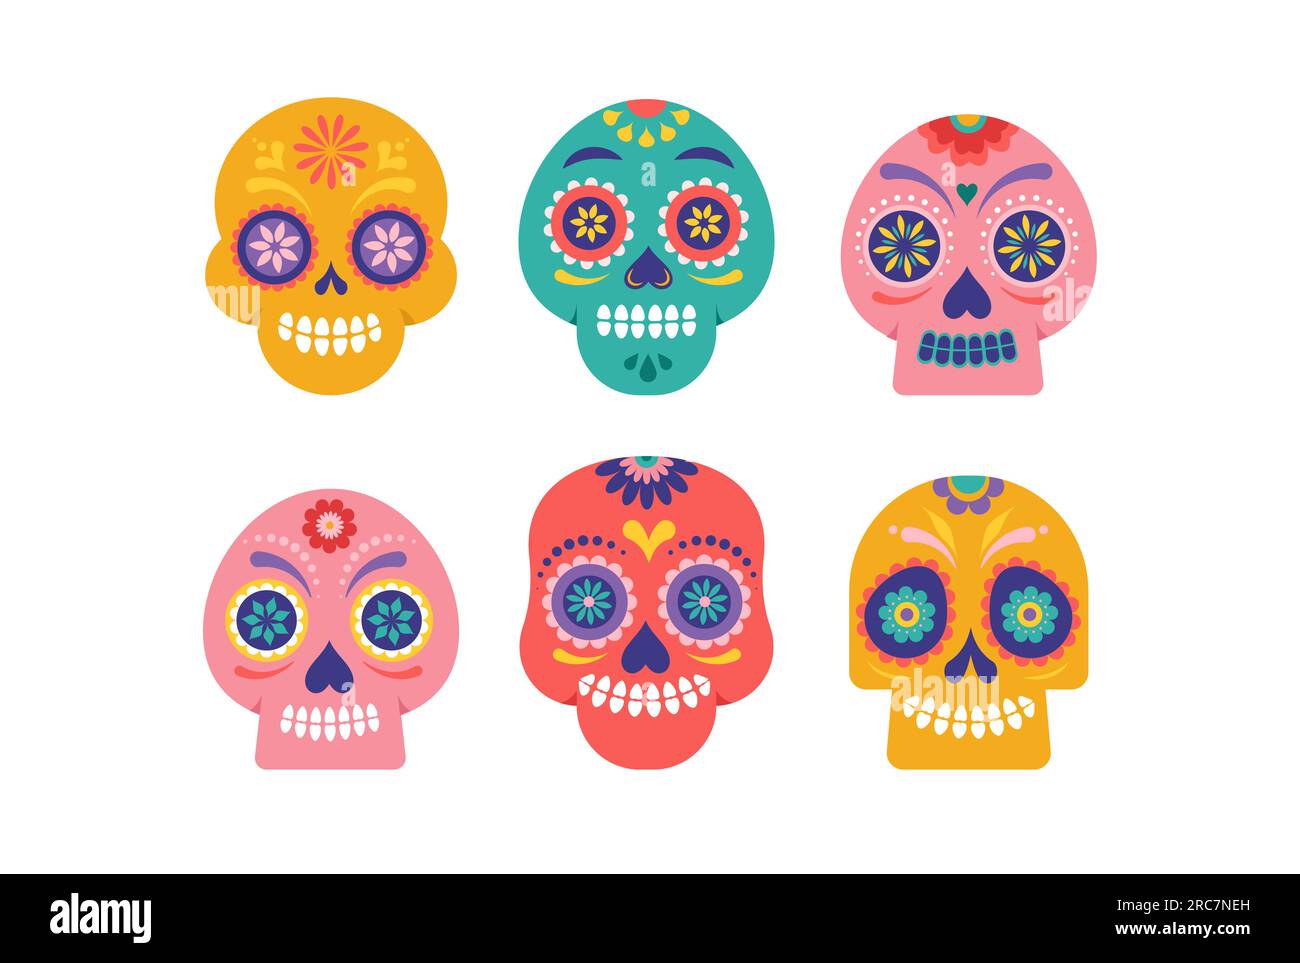 Teschi colorati, teschi di zucchero messicani per il giorno dei morti, dia de los muertos. Illustrazione vettoriale Illustrazione Vettoriale